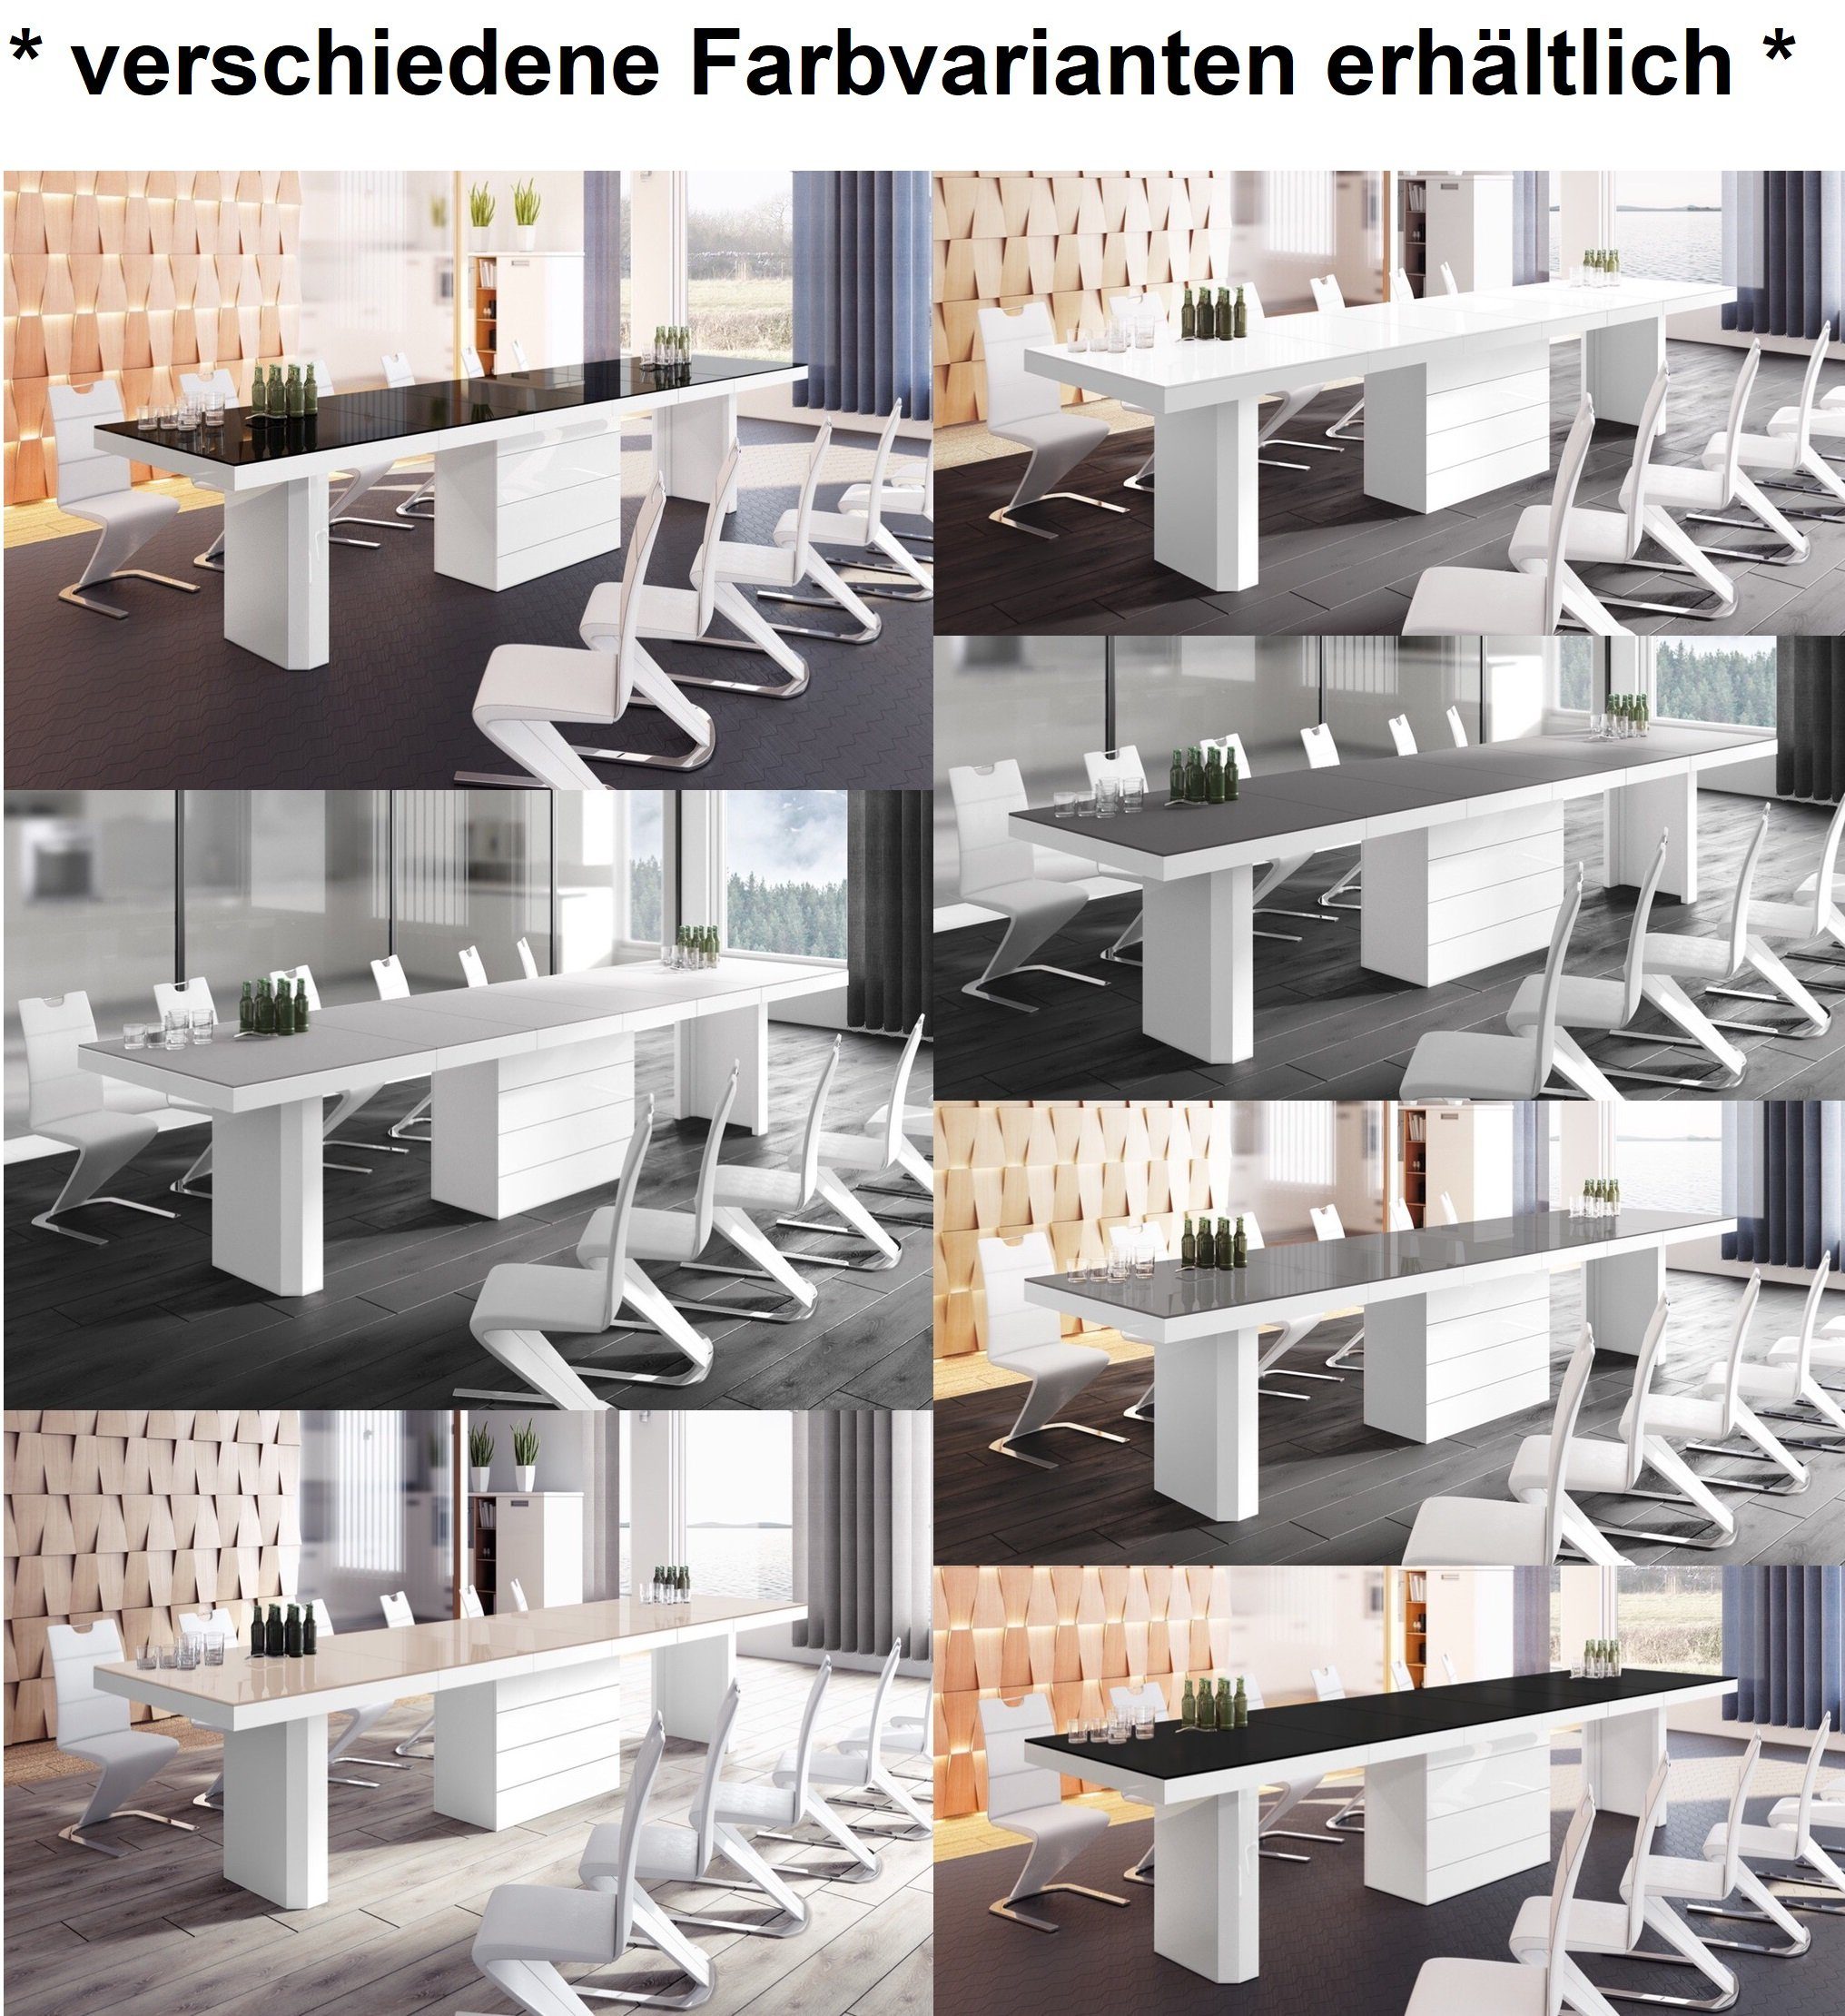 Esstisch ausziehbar Weiß Hochglanz Design Hochglanz cm / Hochglanz / Weiß XXL Schwarz 160-412 Schwarz HE-444 designimpex Tisch